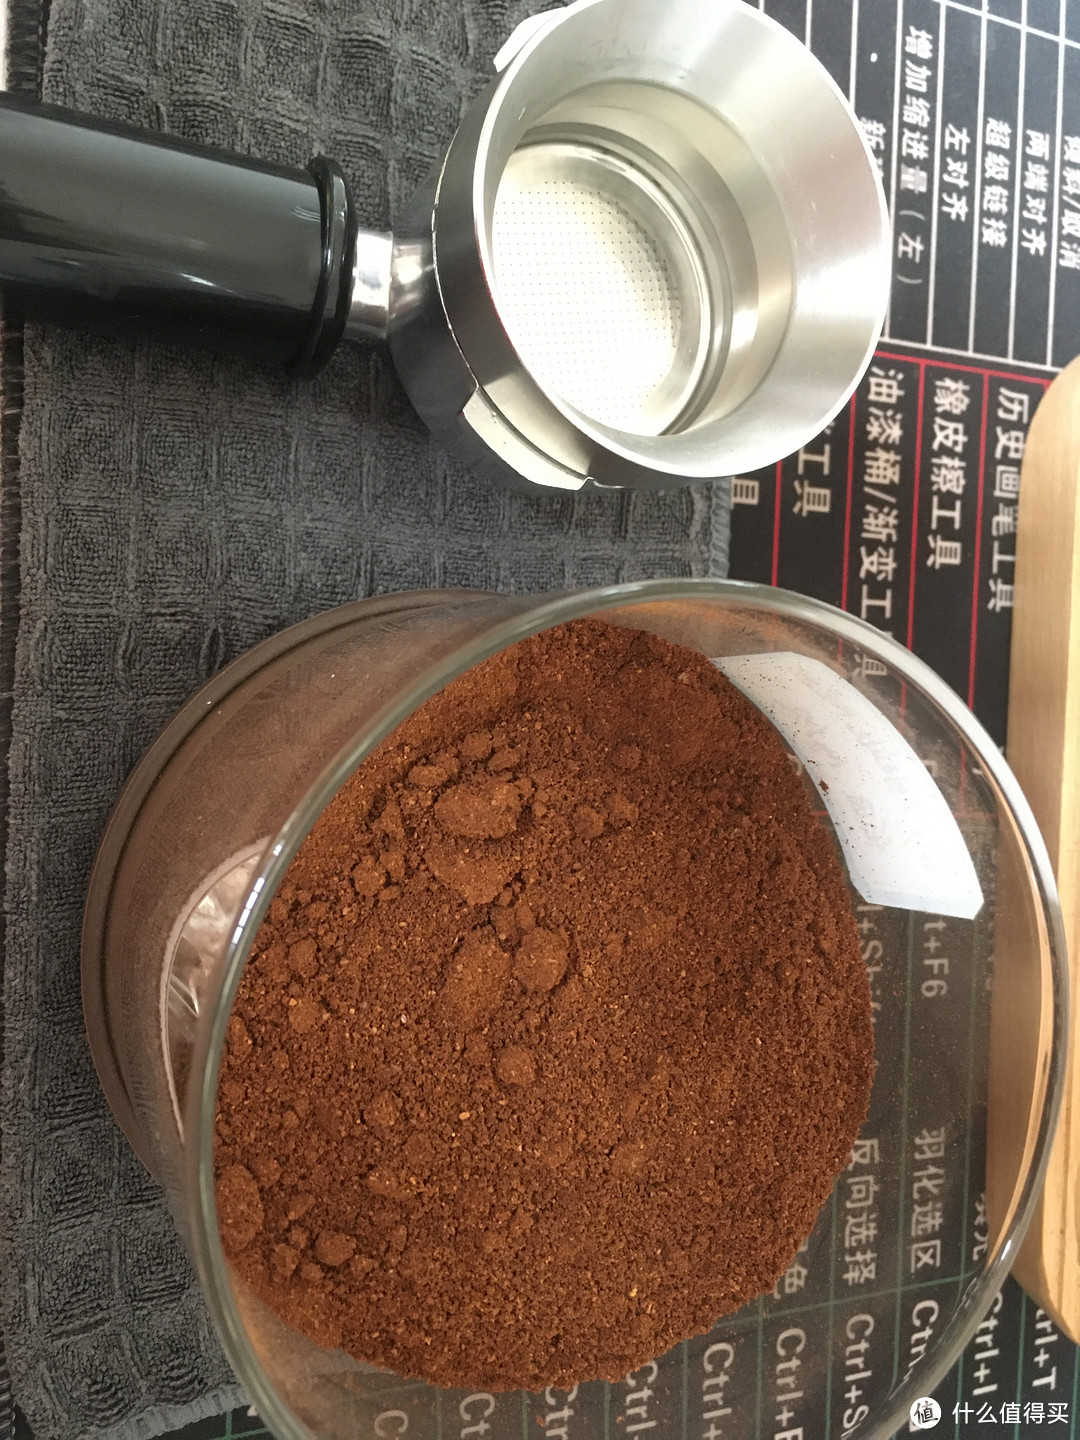 咖啡粉儿磨好后储存在带抽气功能的玻璃密封罐子里比较耐放，豆子是拉瓦萨红包罗萨中烘意式拼配豆